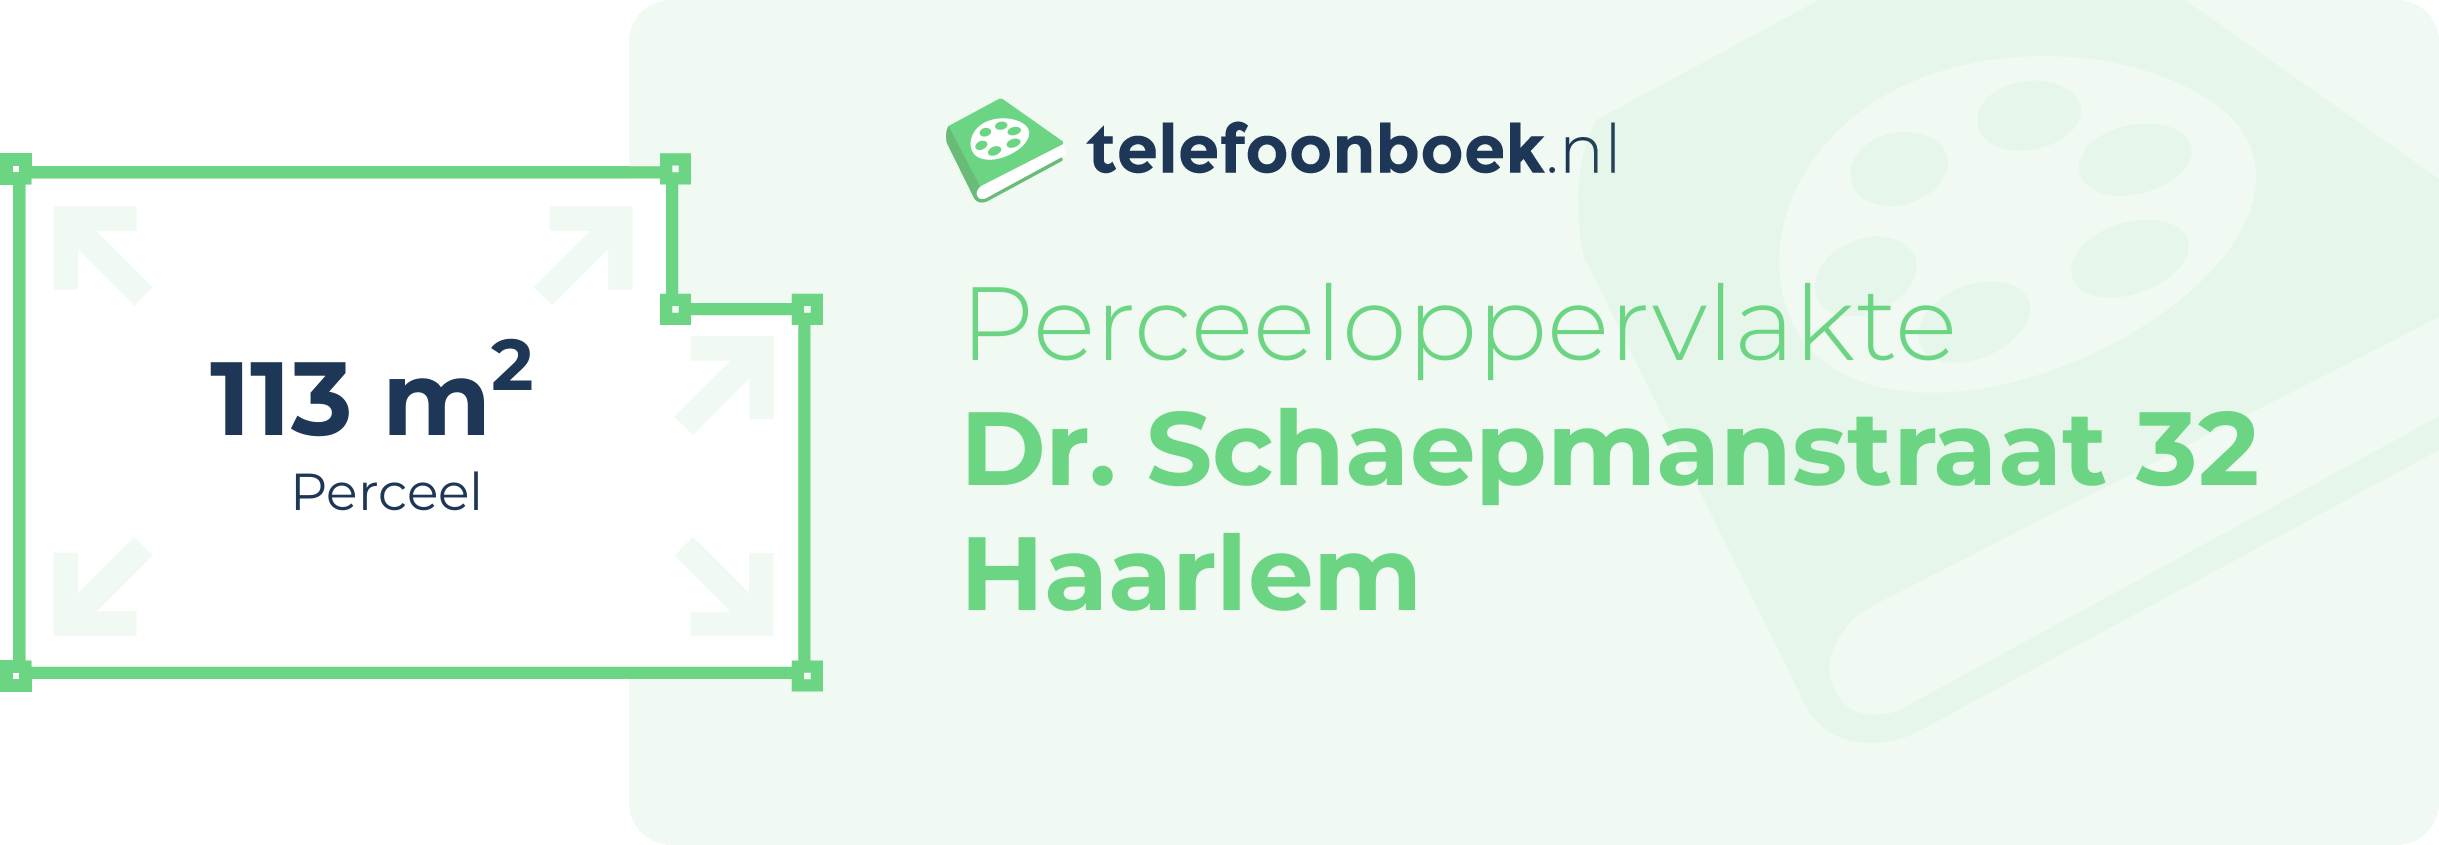 Perceeloppervlakte Dr. Schaepmanstraat 32 Haarlem